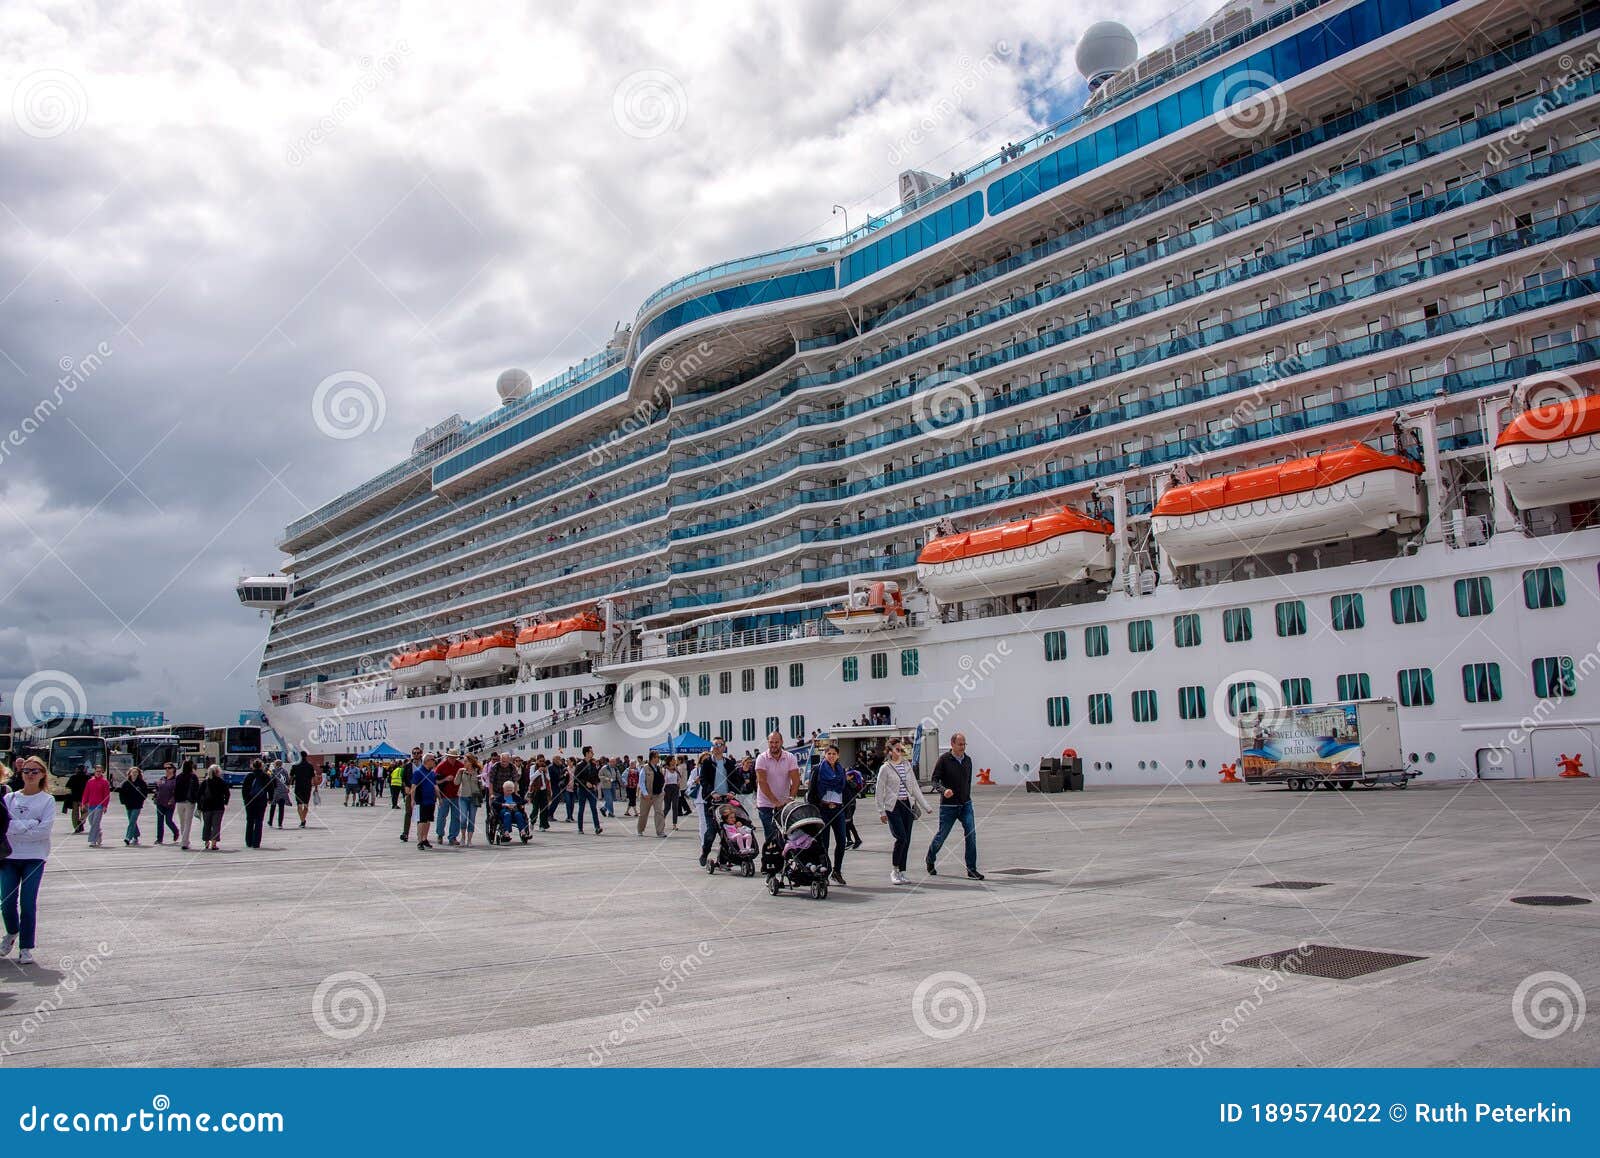 cruise departure ports ireland